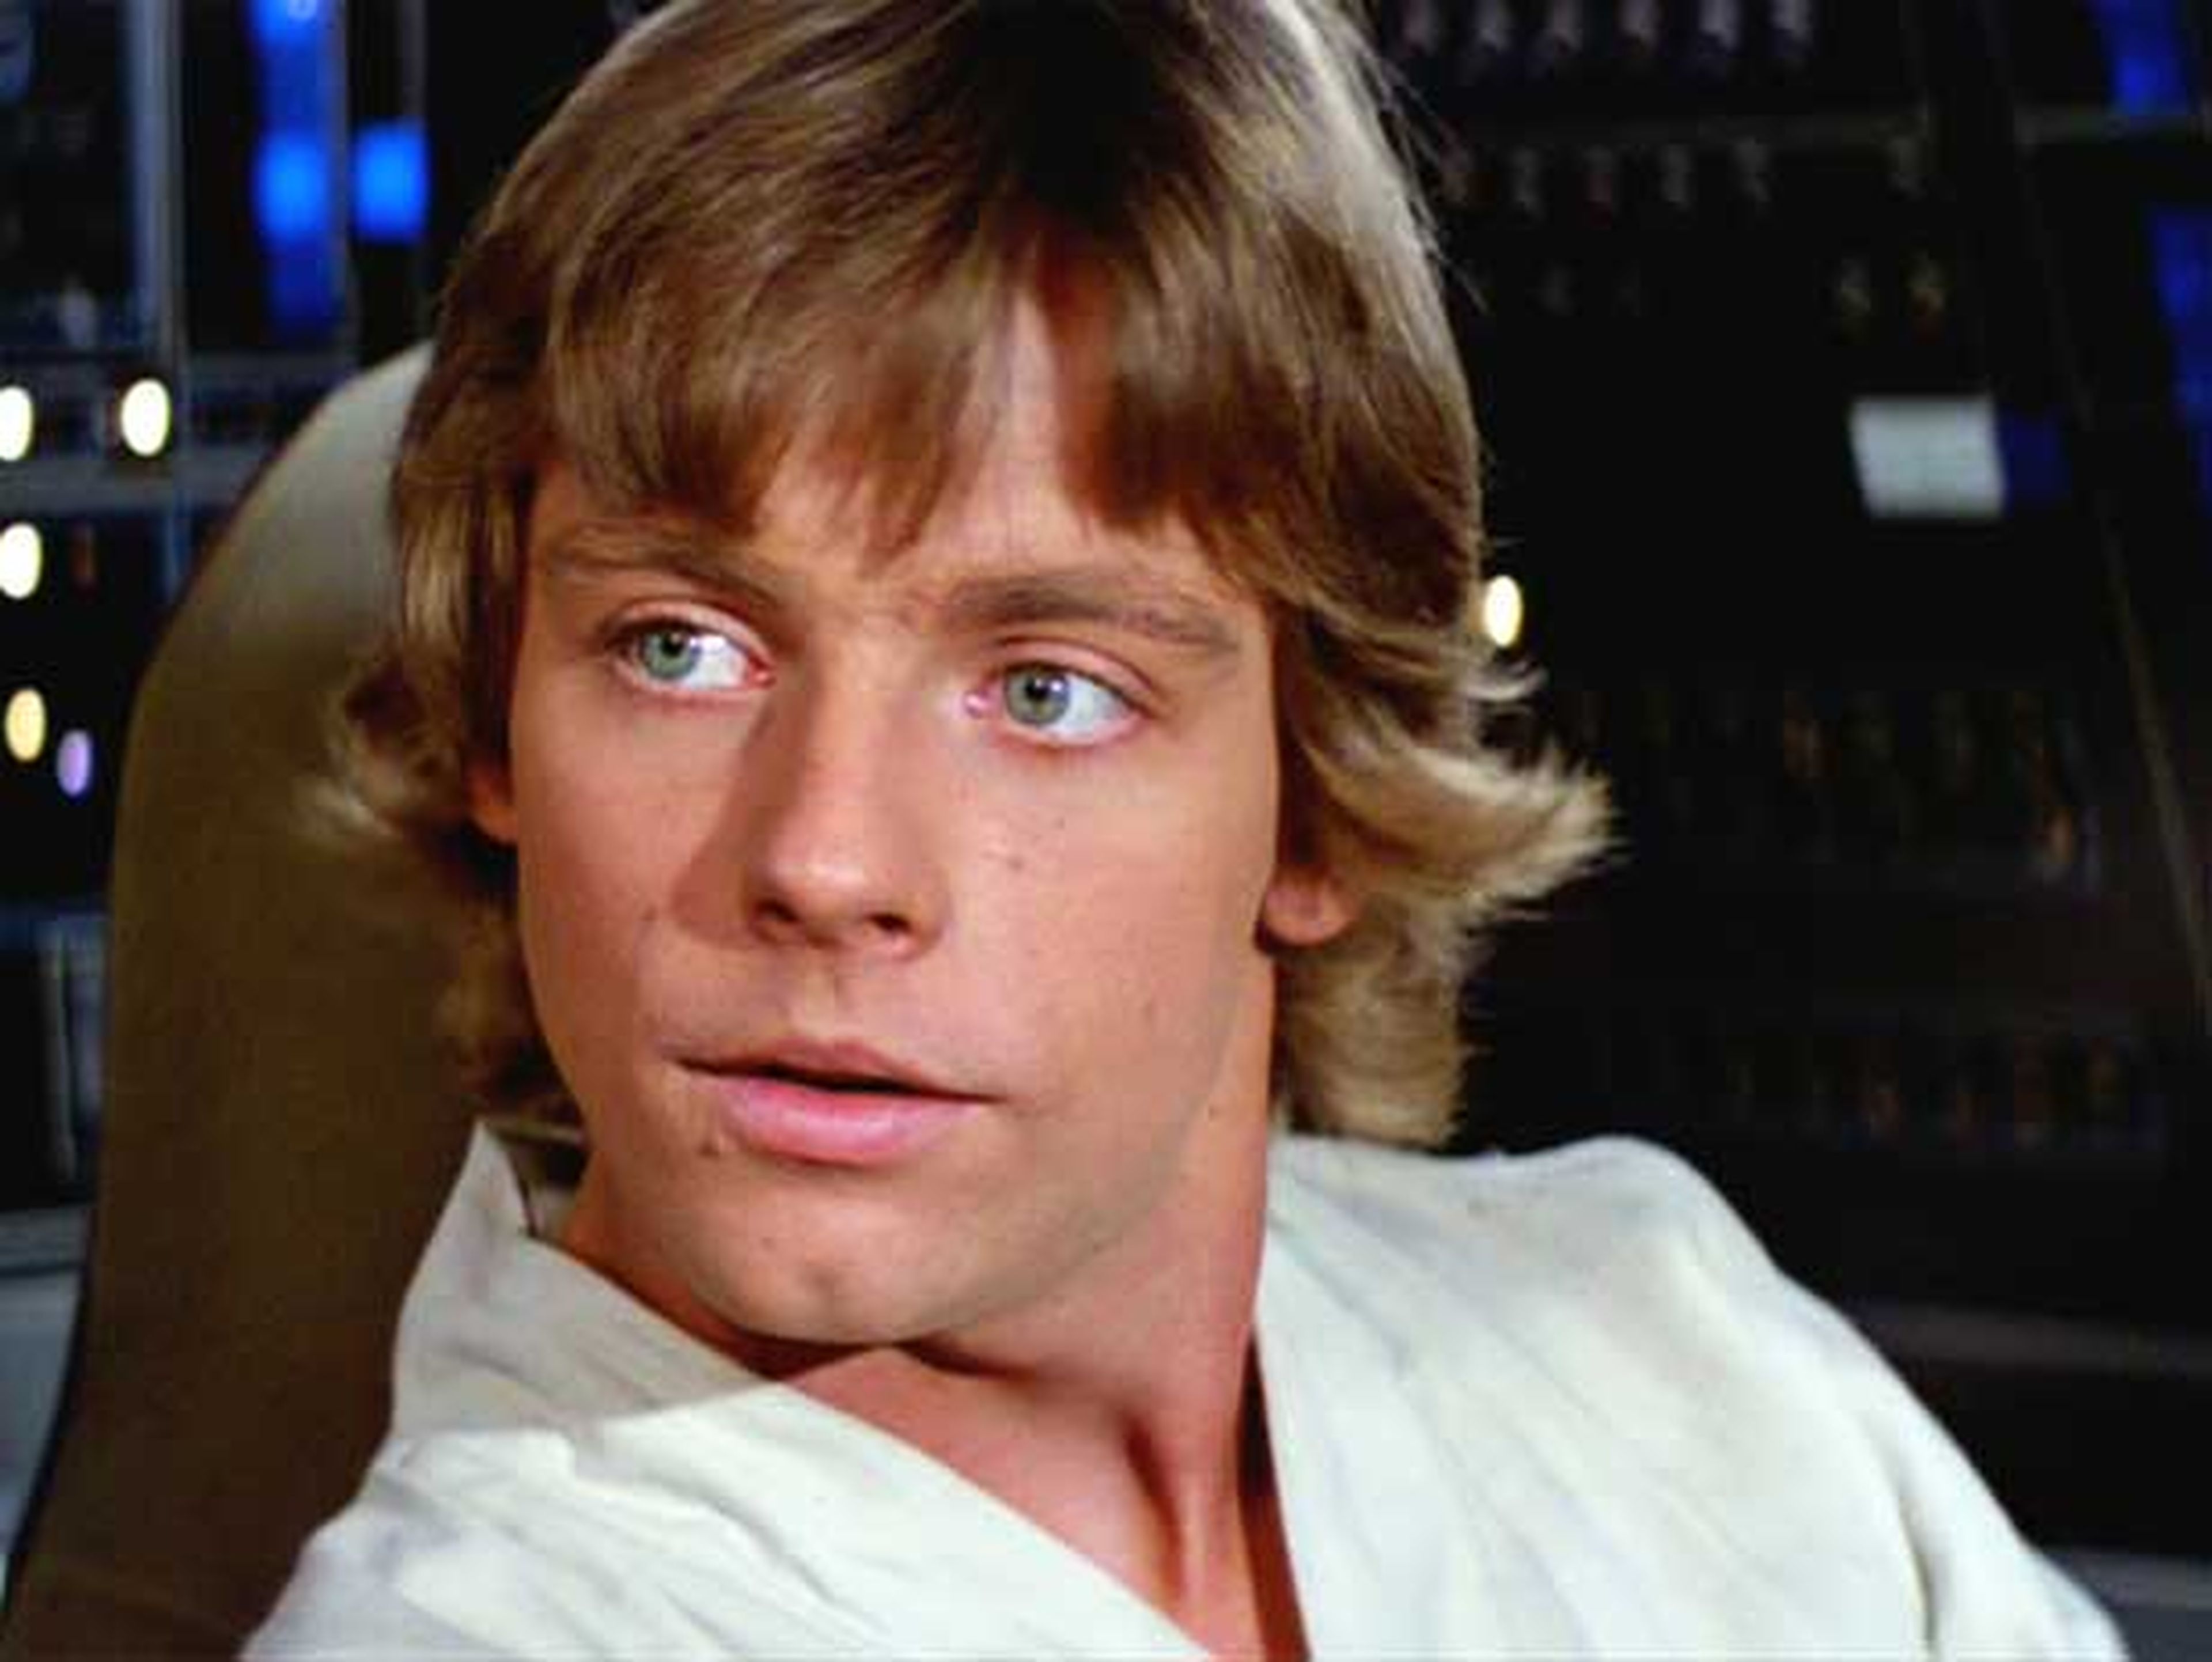 Star Wars obliga a Mark Hamill (Luke Skywalker) a llevar barba